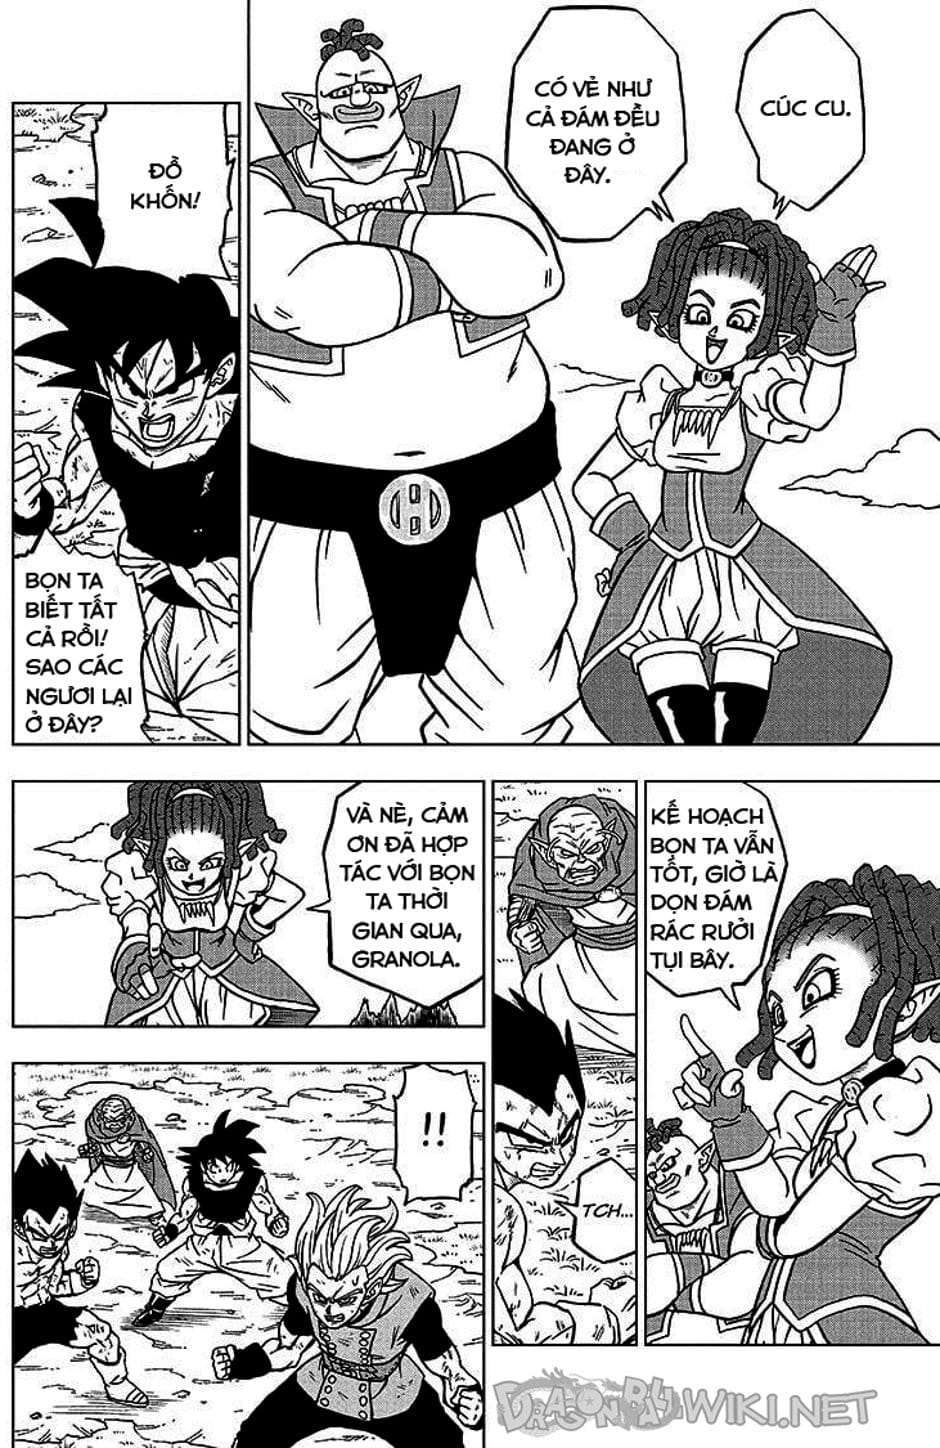 Truyện Tranh Truy Tìm Ngọc Rồng Siêu Cấp - Dragon Ball Super trang 3120